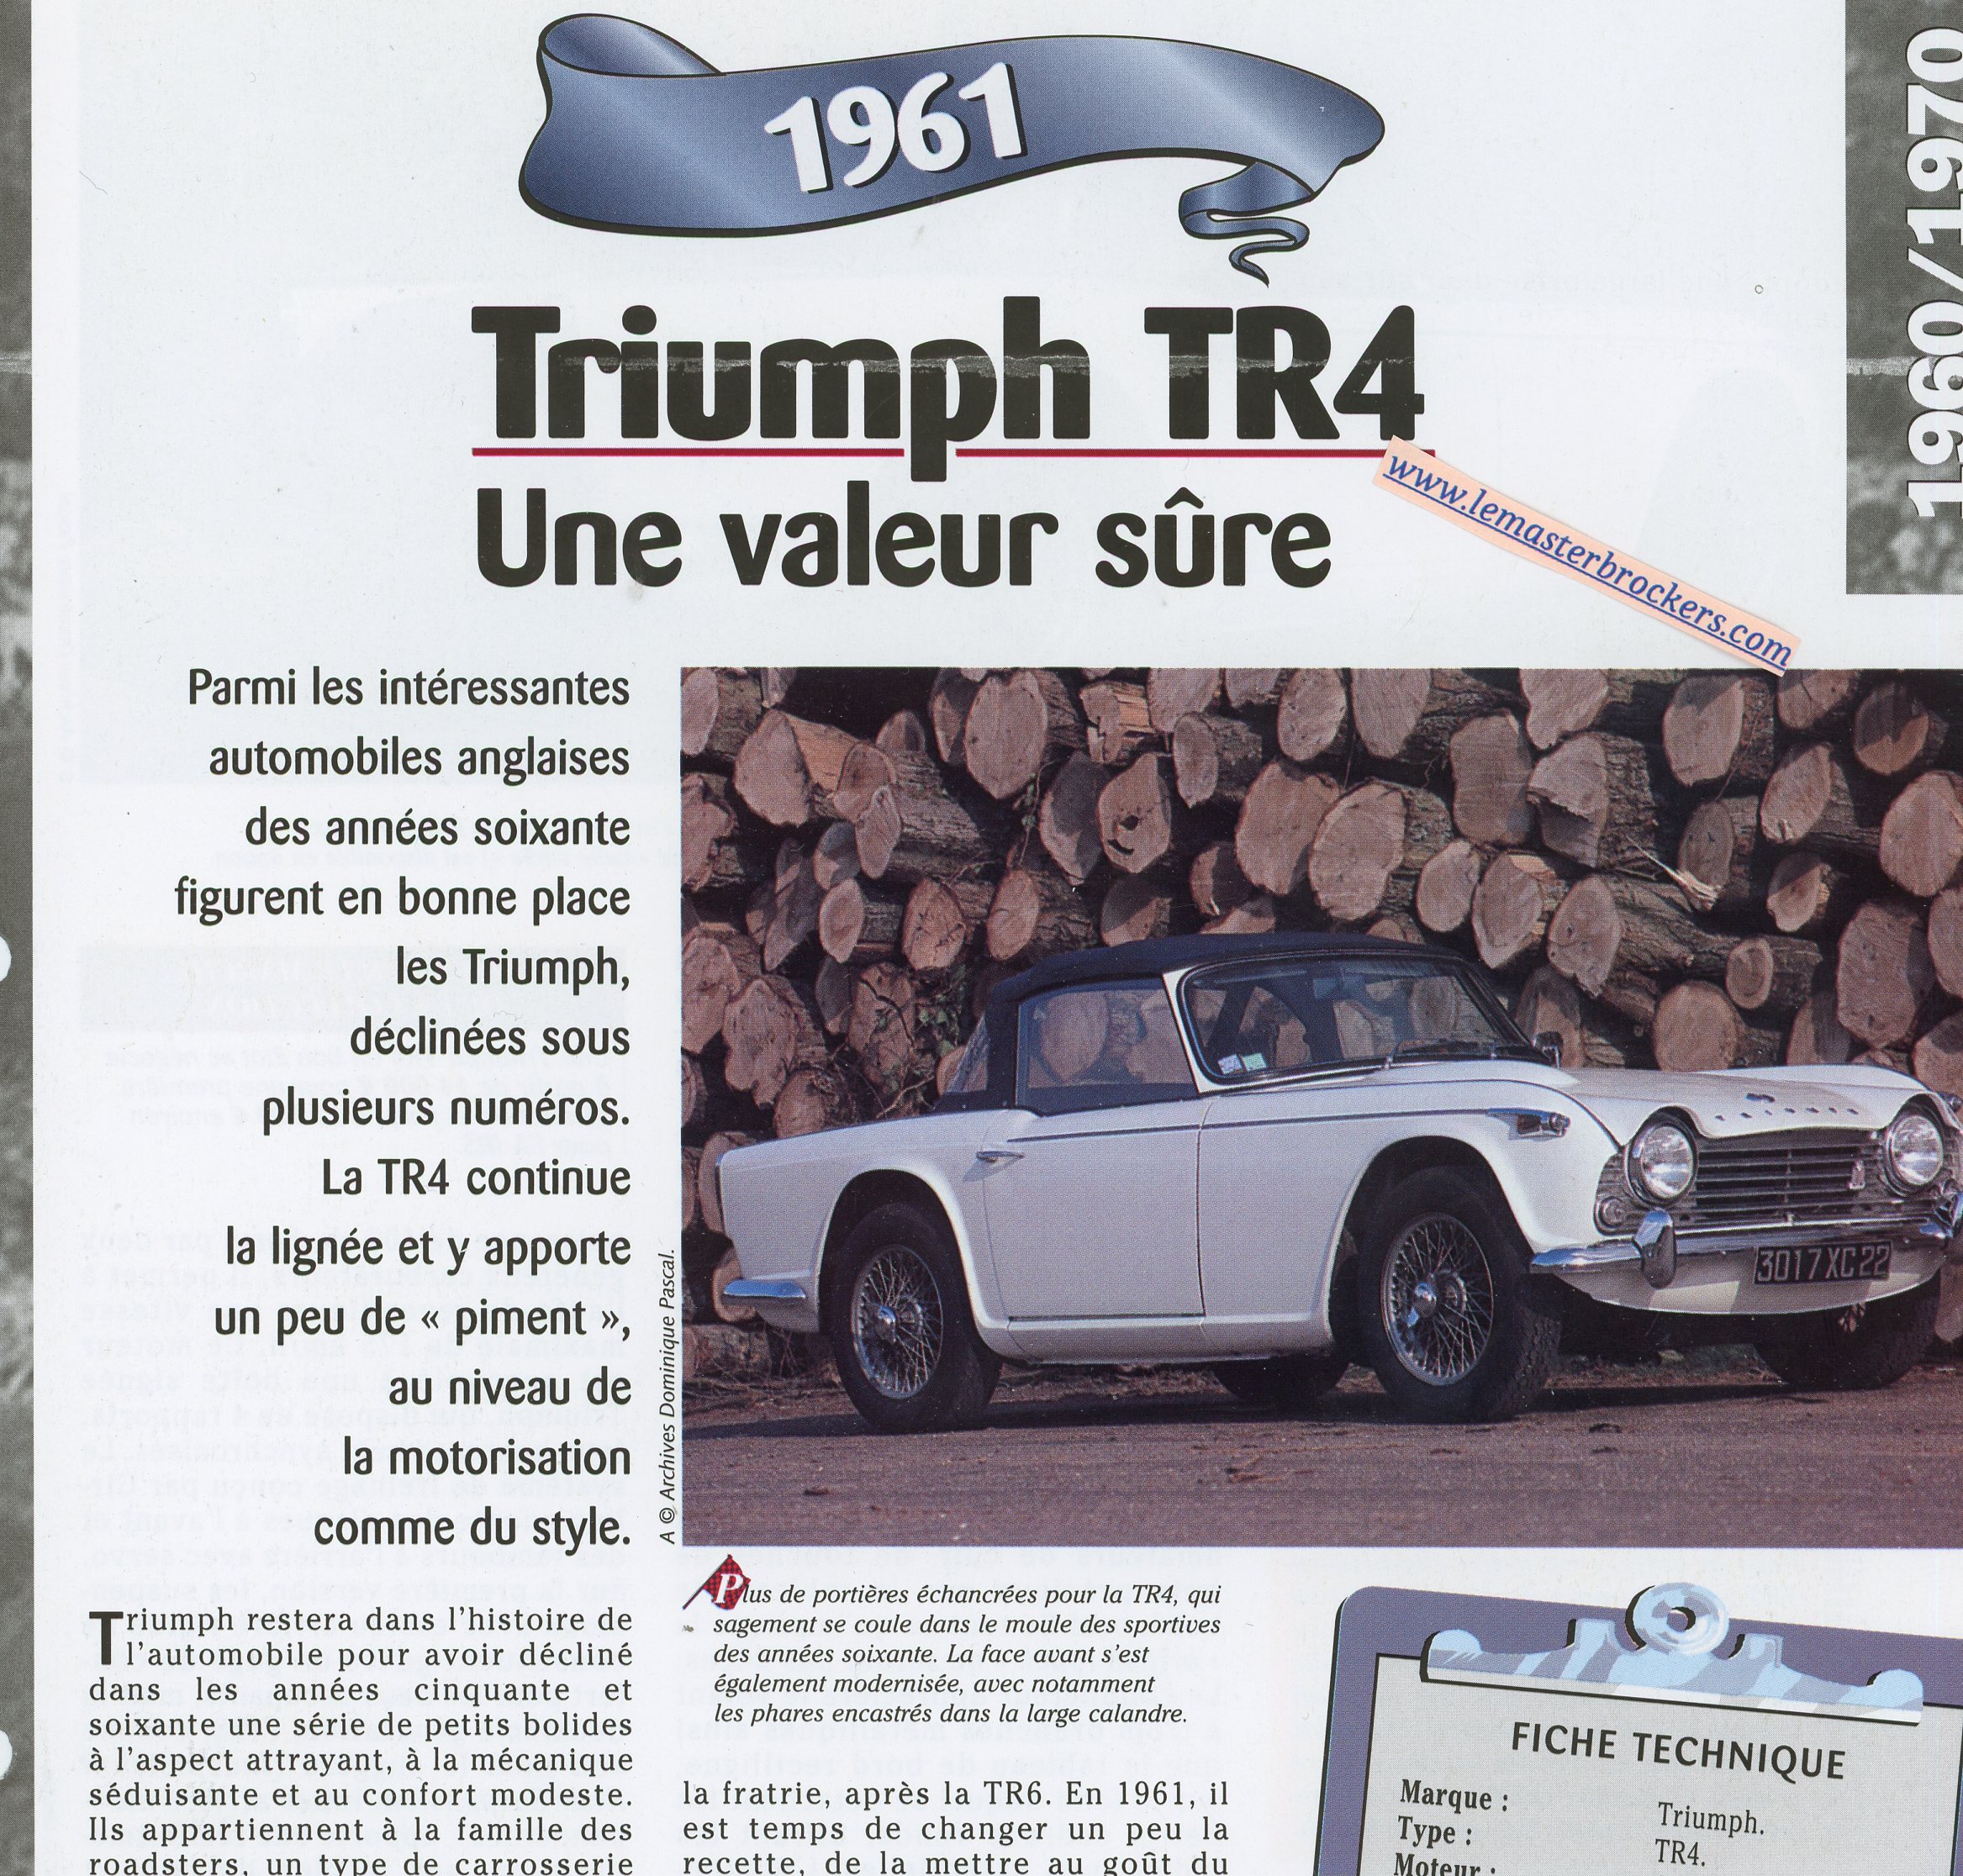 TRIUMPH-TR4-1961-FICHE-TECHNIQUE-VOITURE-LEMASTERBROCKERS